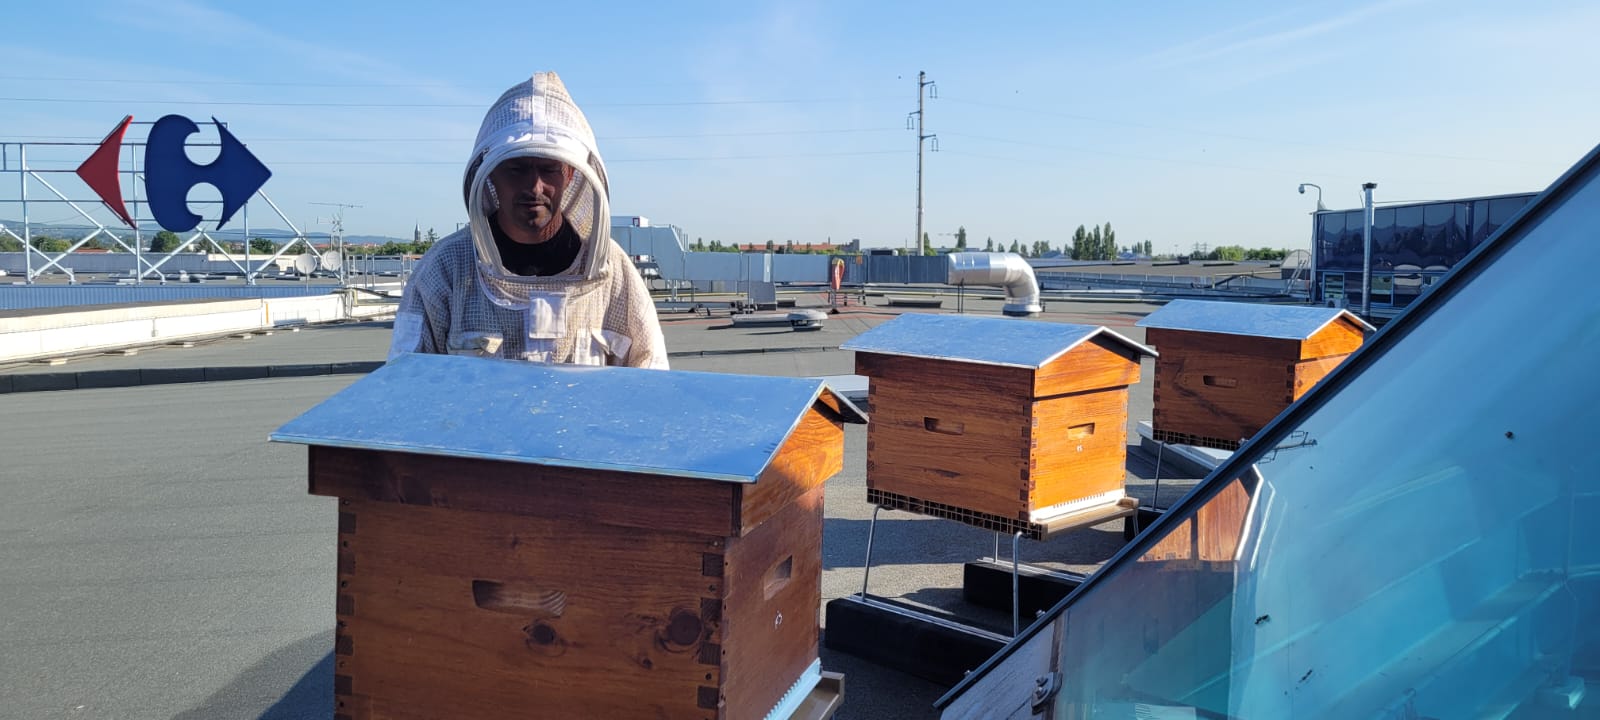 Des abeilles sur le toit !